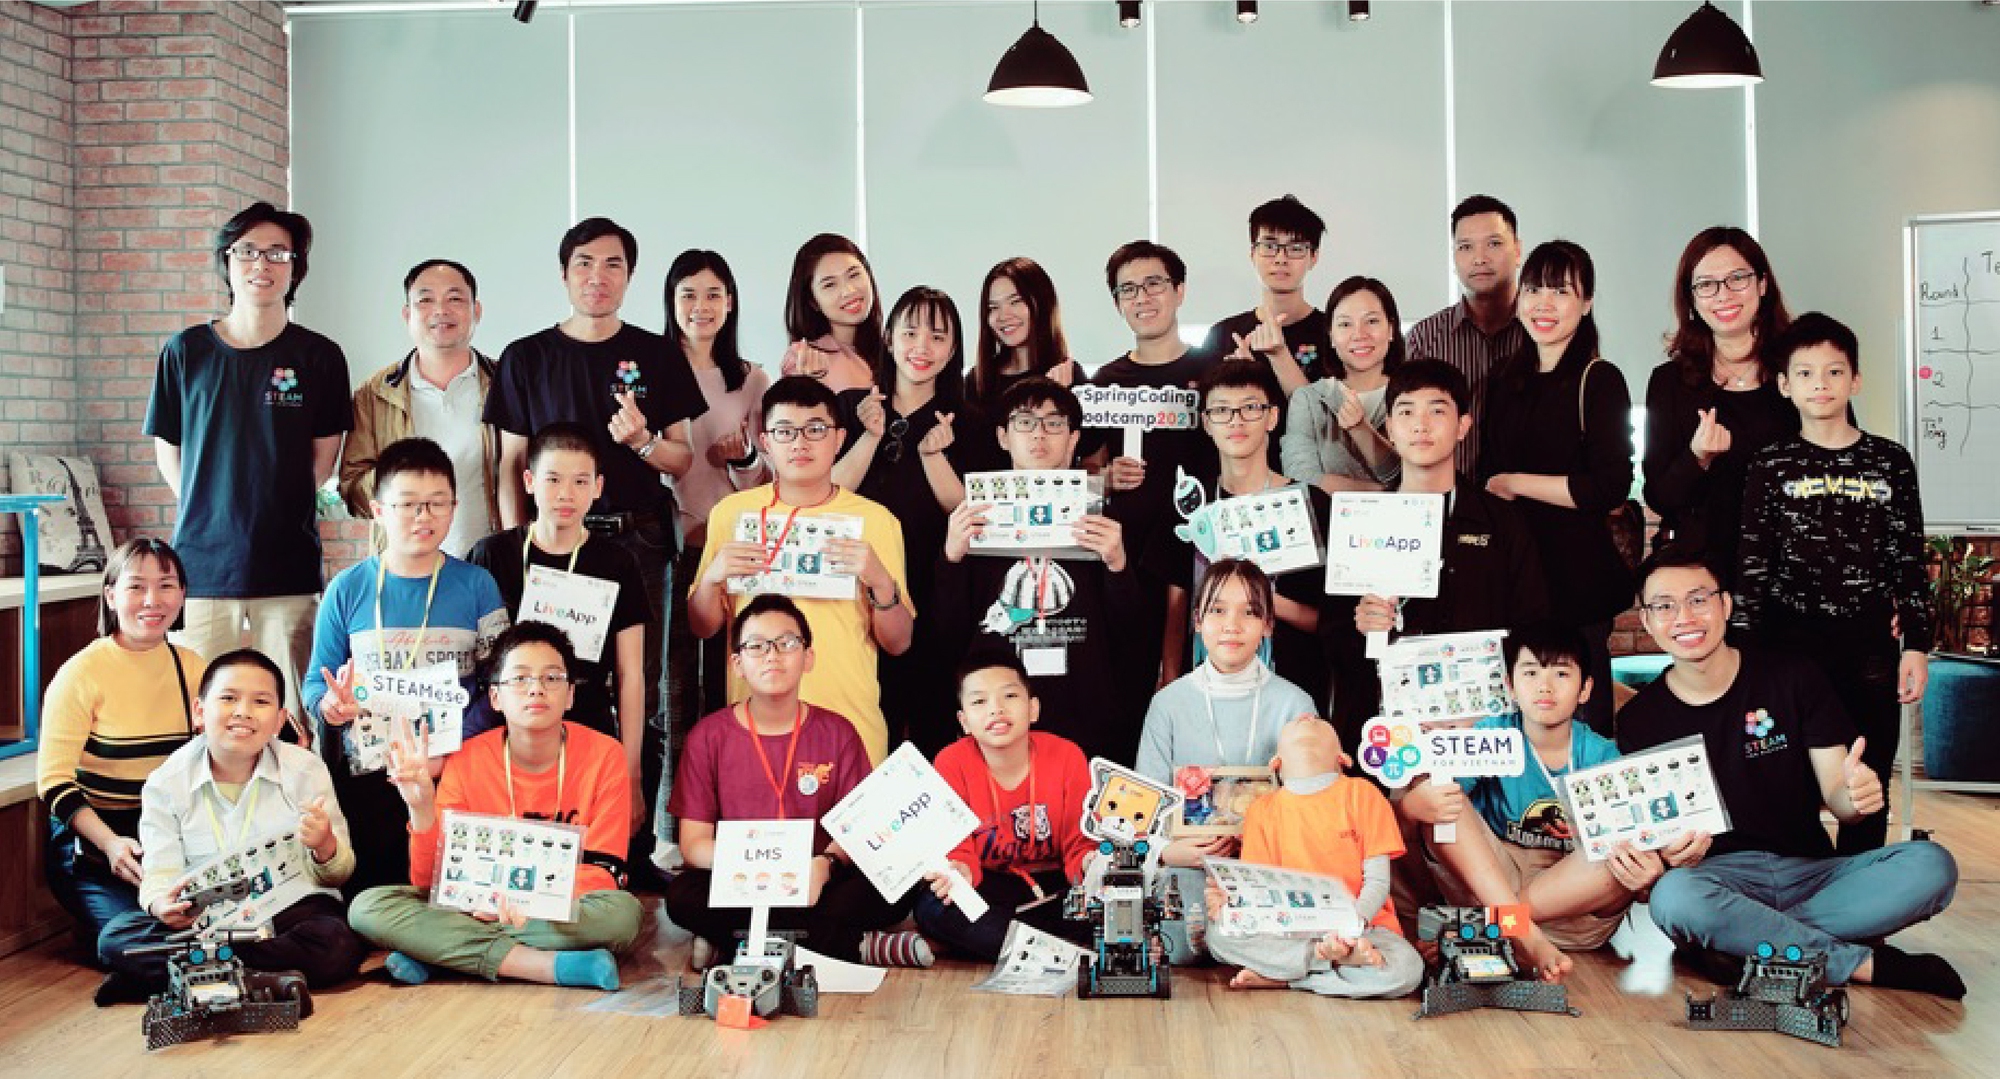 ‘Startup giáo dục’ kỳ lạ: Thiết kế như show truyền hình, mời chuyên gia NASA, Facebook, Google, Microsoft… dạy lập trình miễn phí cho trẻ em Việt Nam - Ảnh 9.